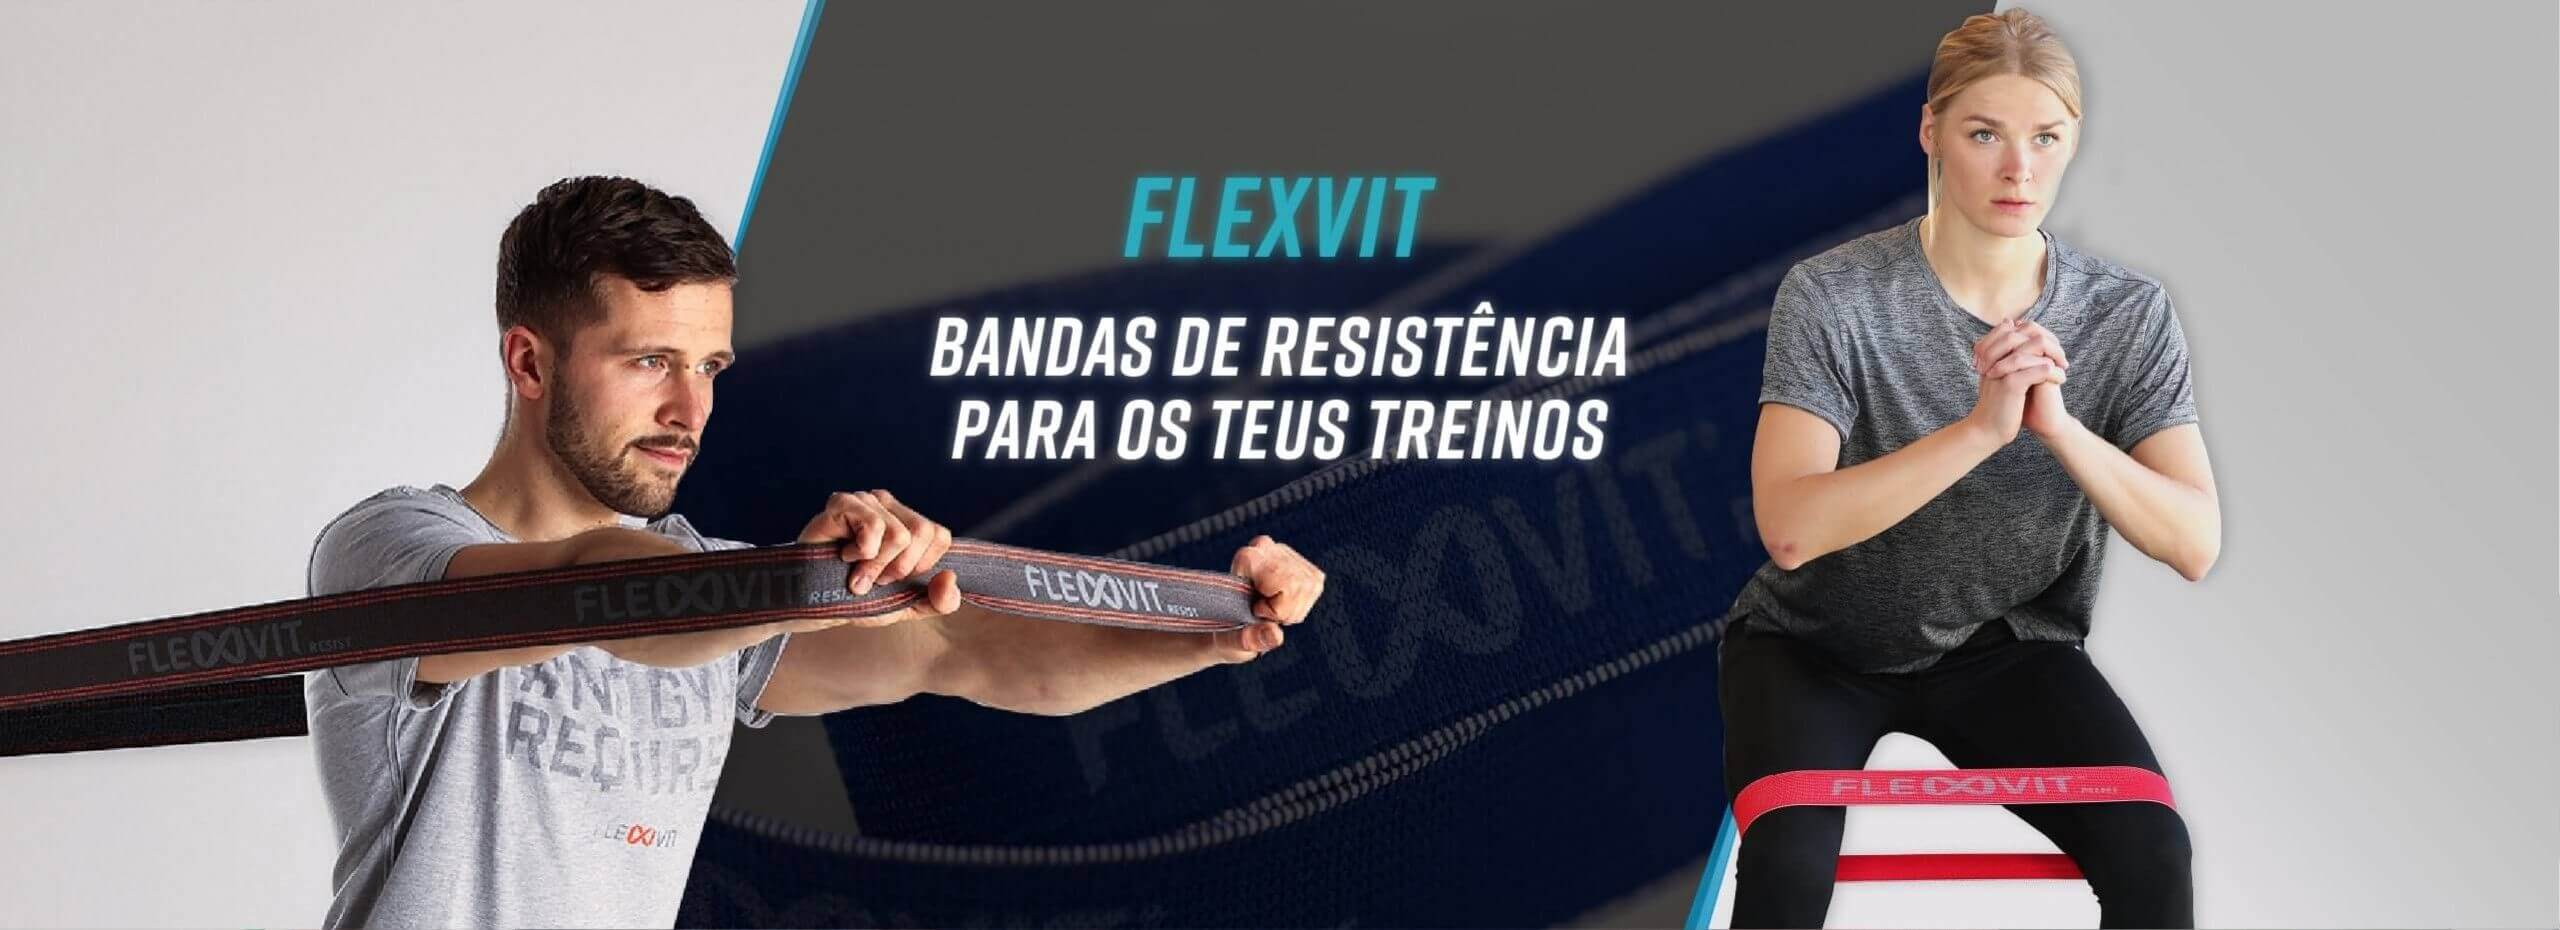 FLEXVIT bandas de resistencia